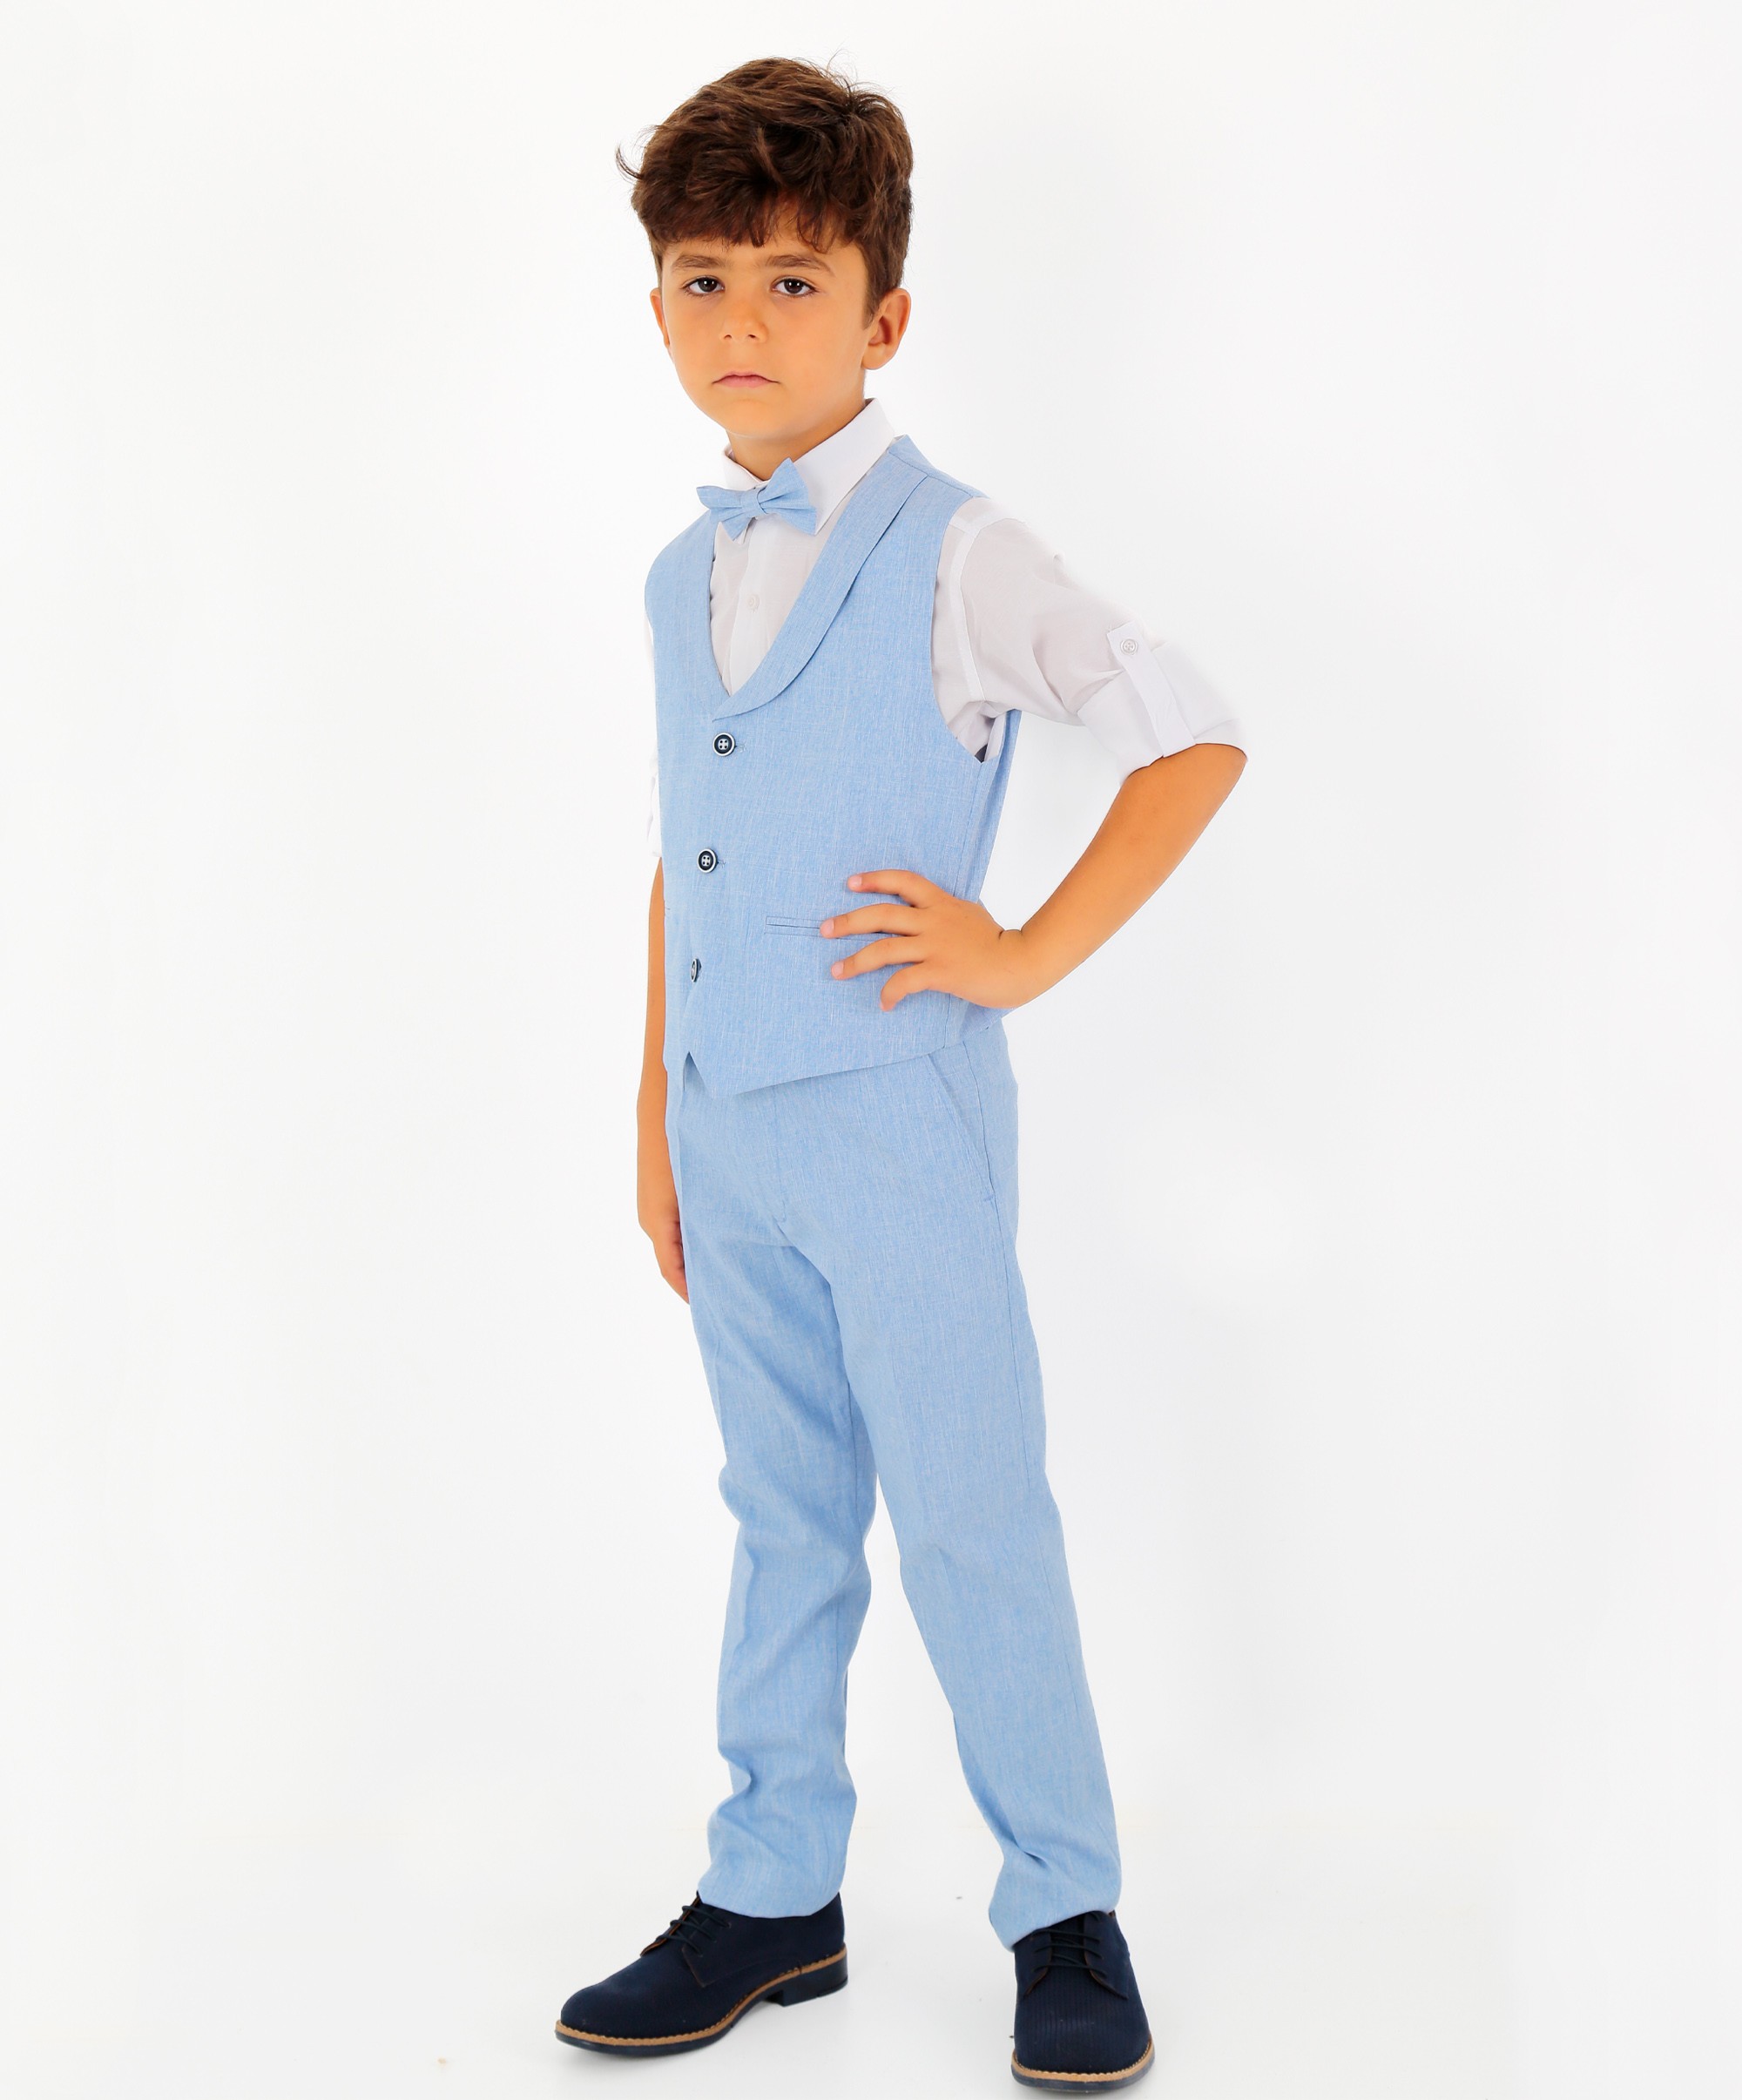 Erkek Çocuk 4 Parça Yelek Takım | Yelek, Pantolon, Gömlek, Papyon - Mavi